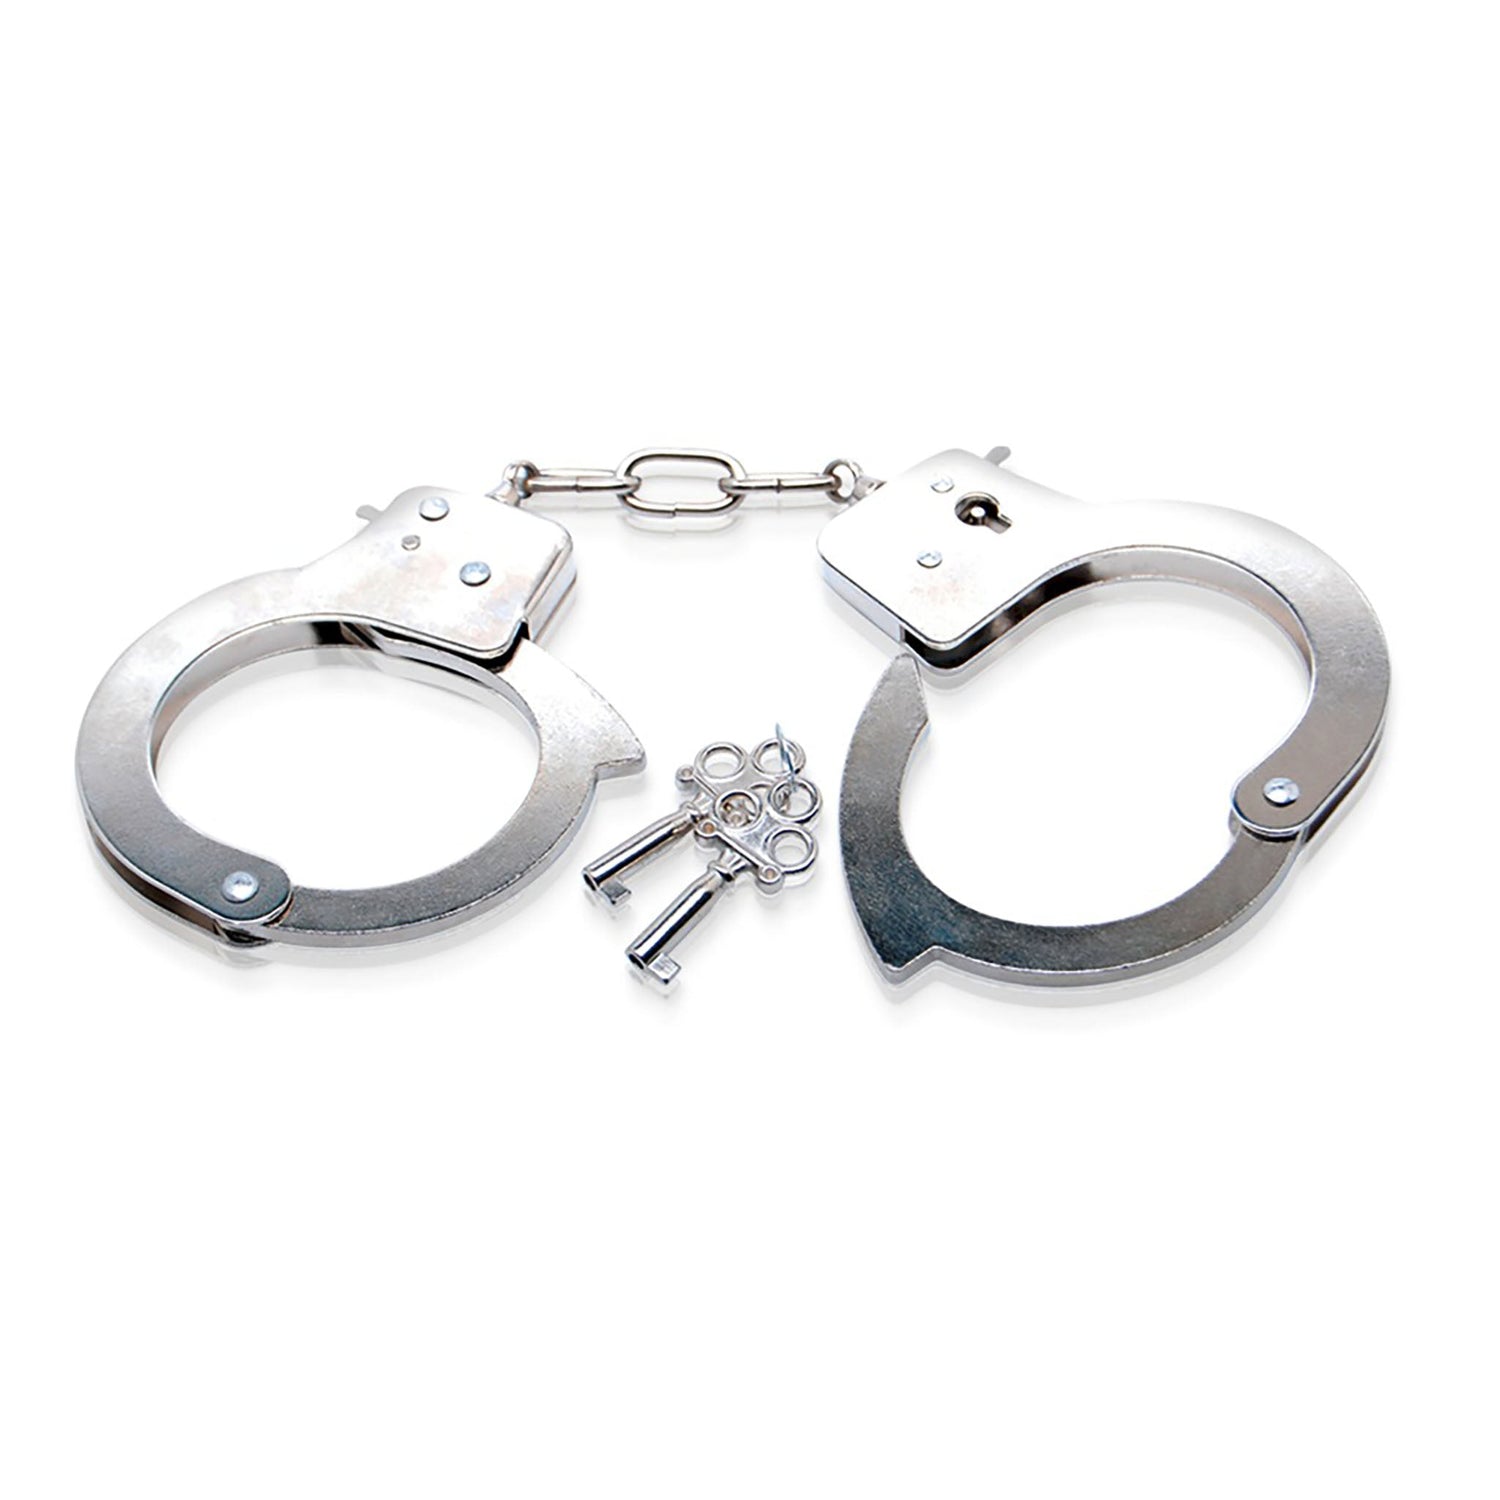 Metal Handcuffs, Handschellen